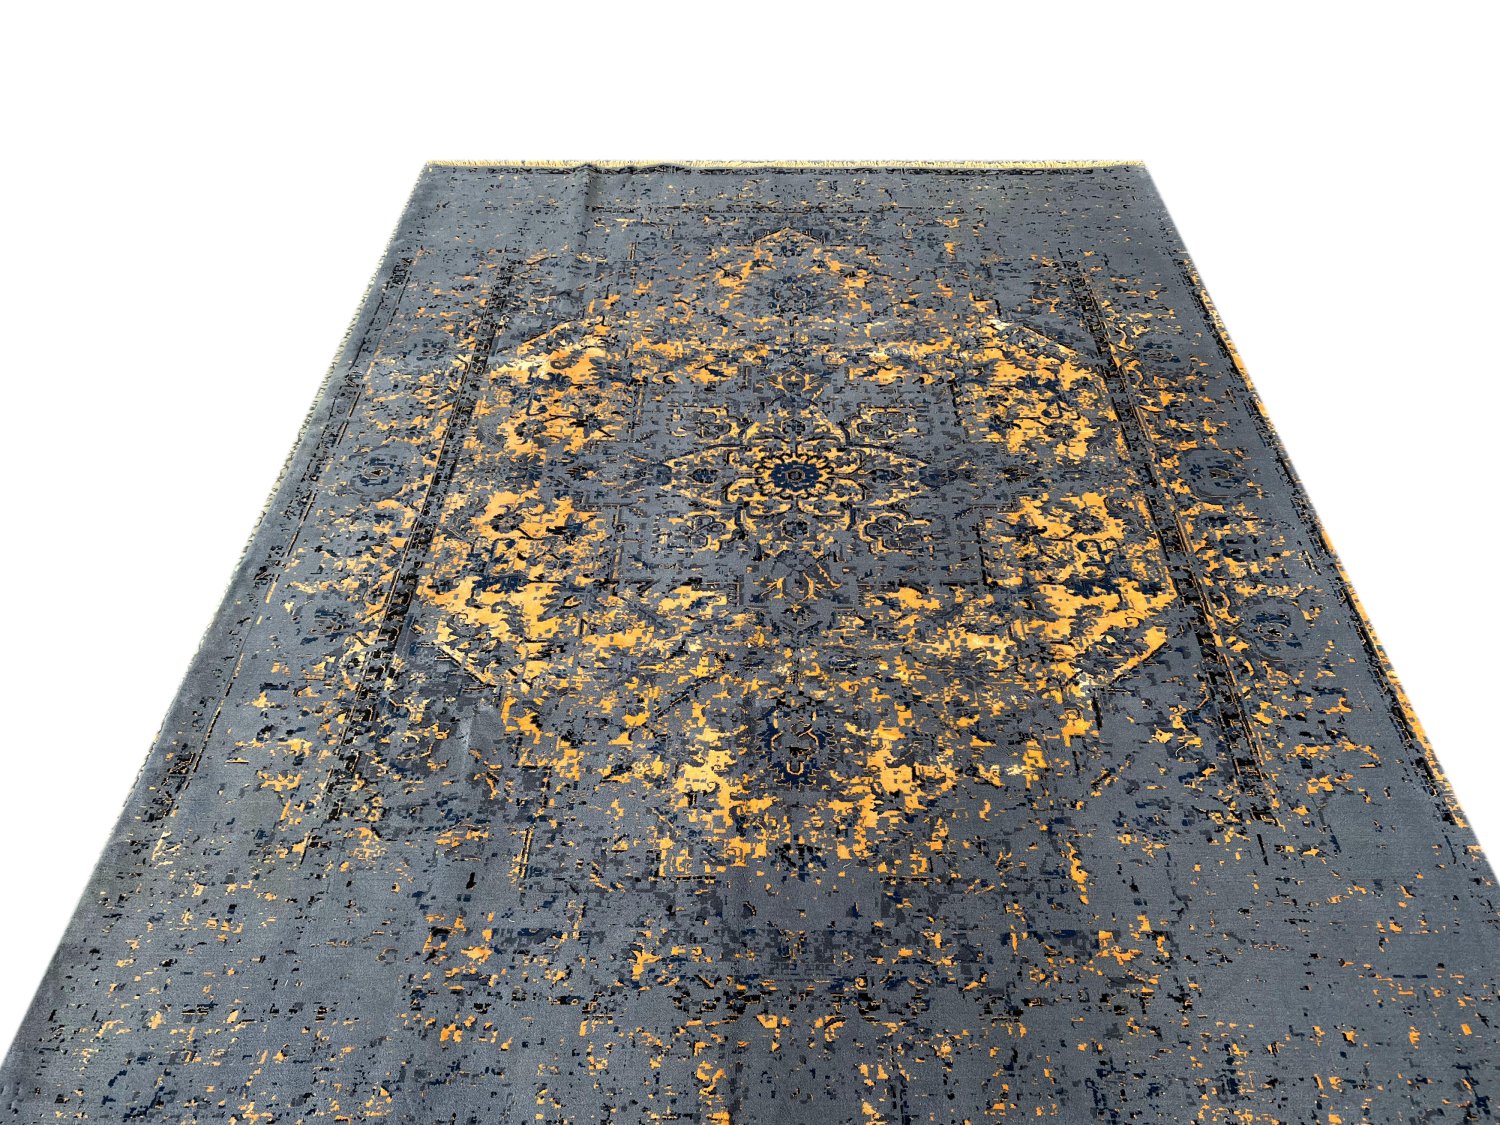 فرش پشمی ماشینی طبیعی و ارگانیک کد 0130 - زمینه طوسی پر رنگ - حاشیه طوسی پر رنگ